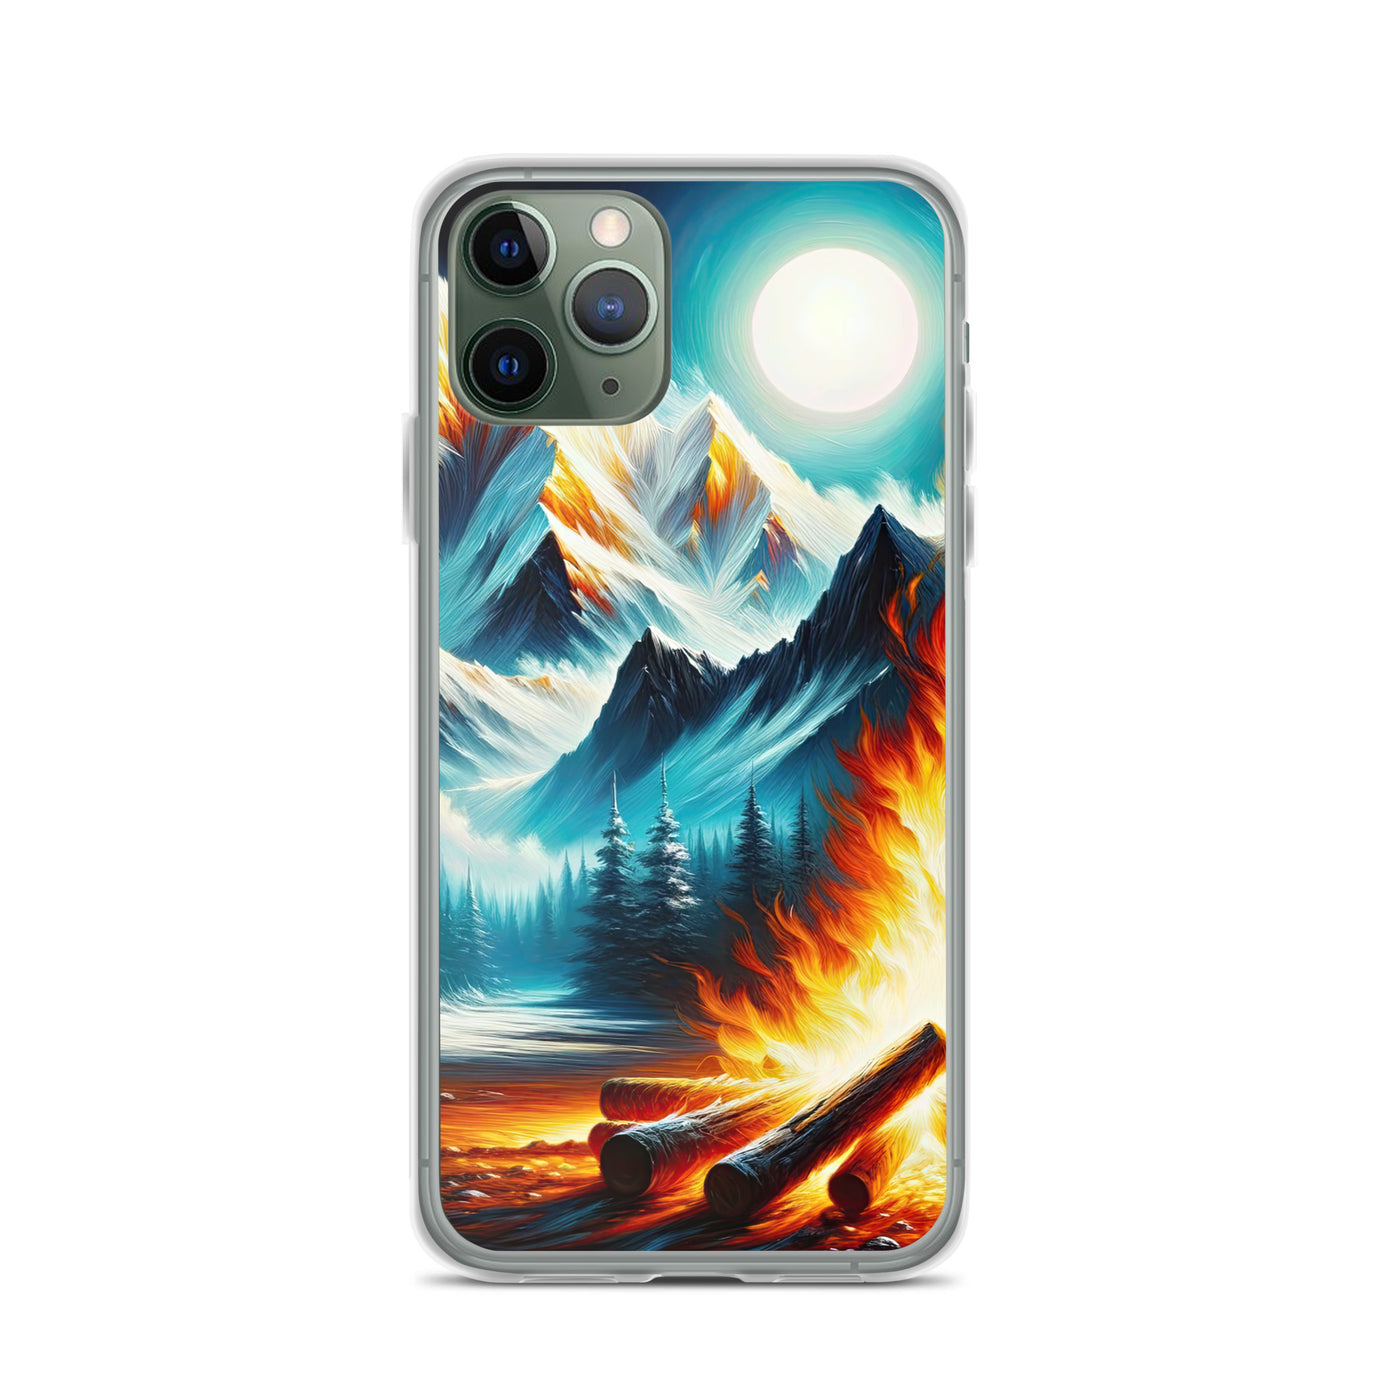 Ölgemälde von Feuer und Eis: Lagerfeuer und Alpen im Kontrast, warme Flammen - iPhone Schutzhülle (durchsichtig) camping xxx yyy zzz iPhone 11 Pro